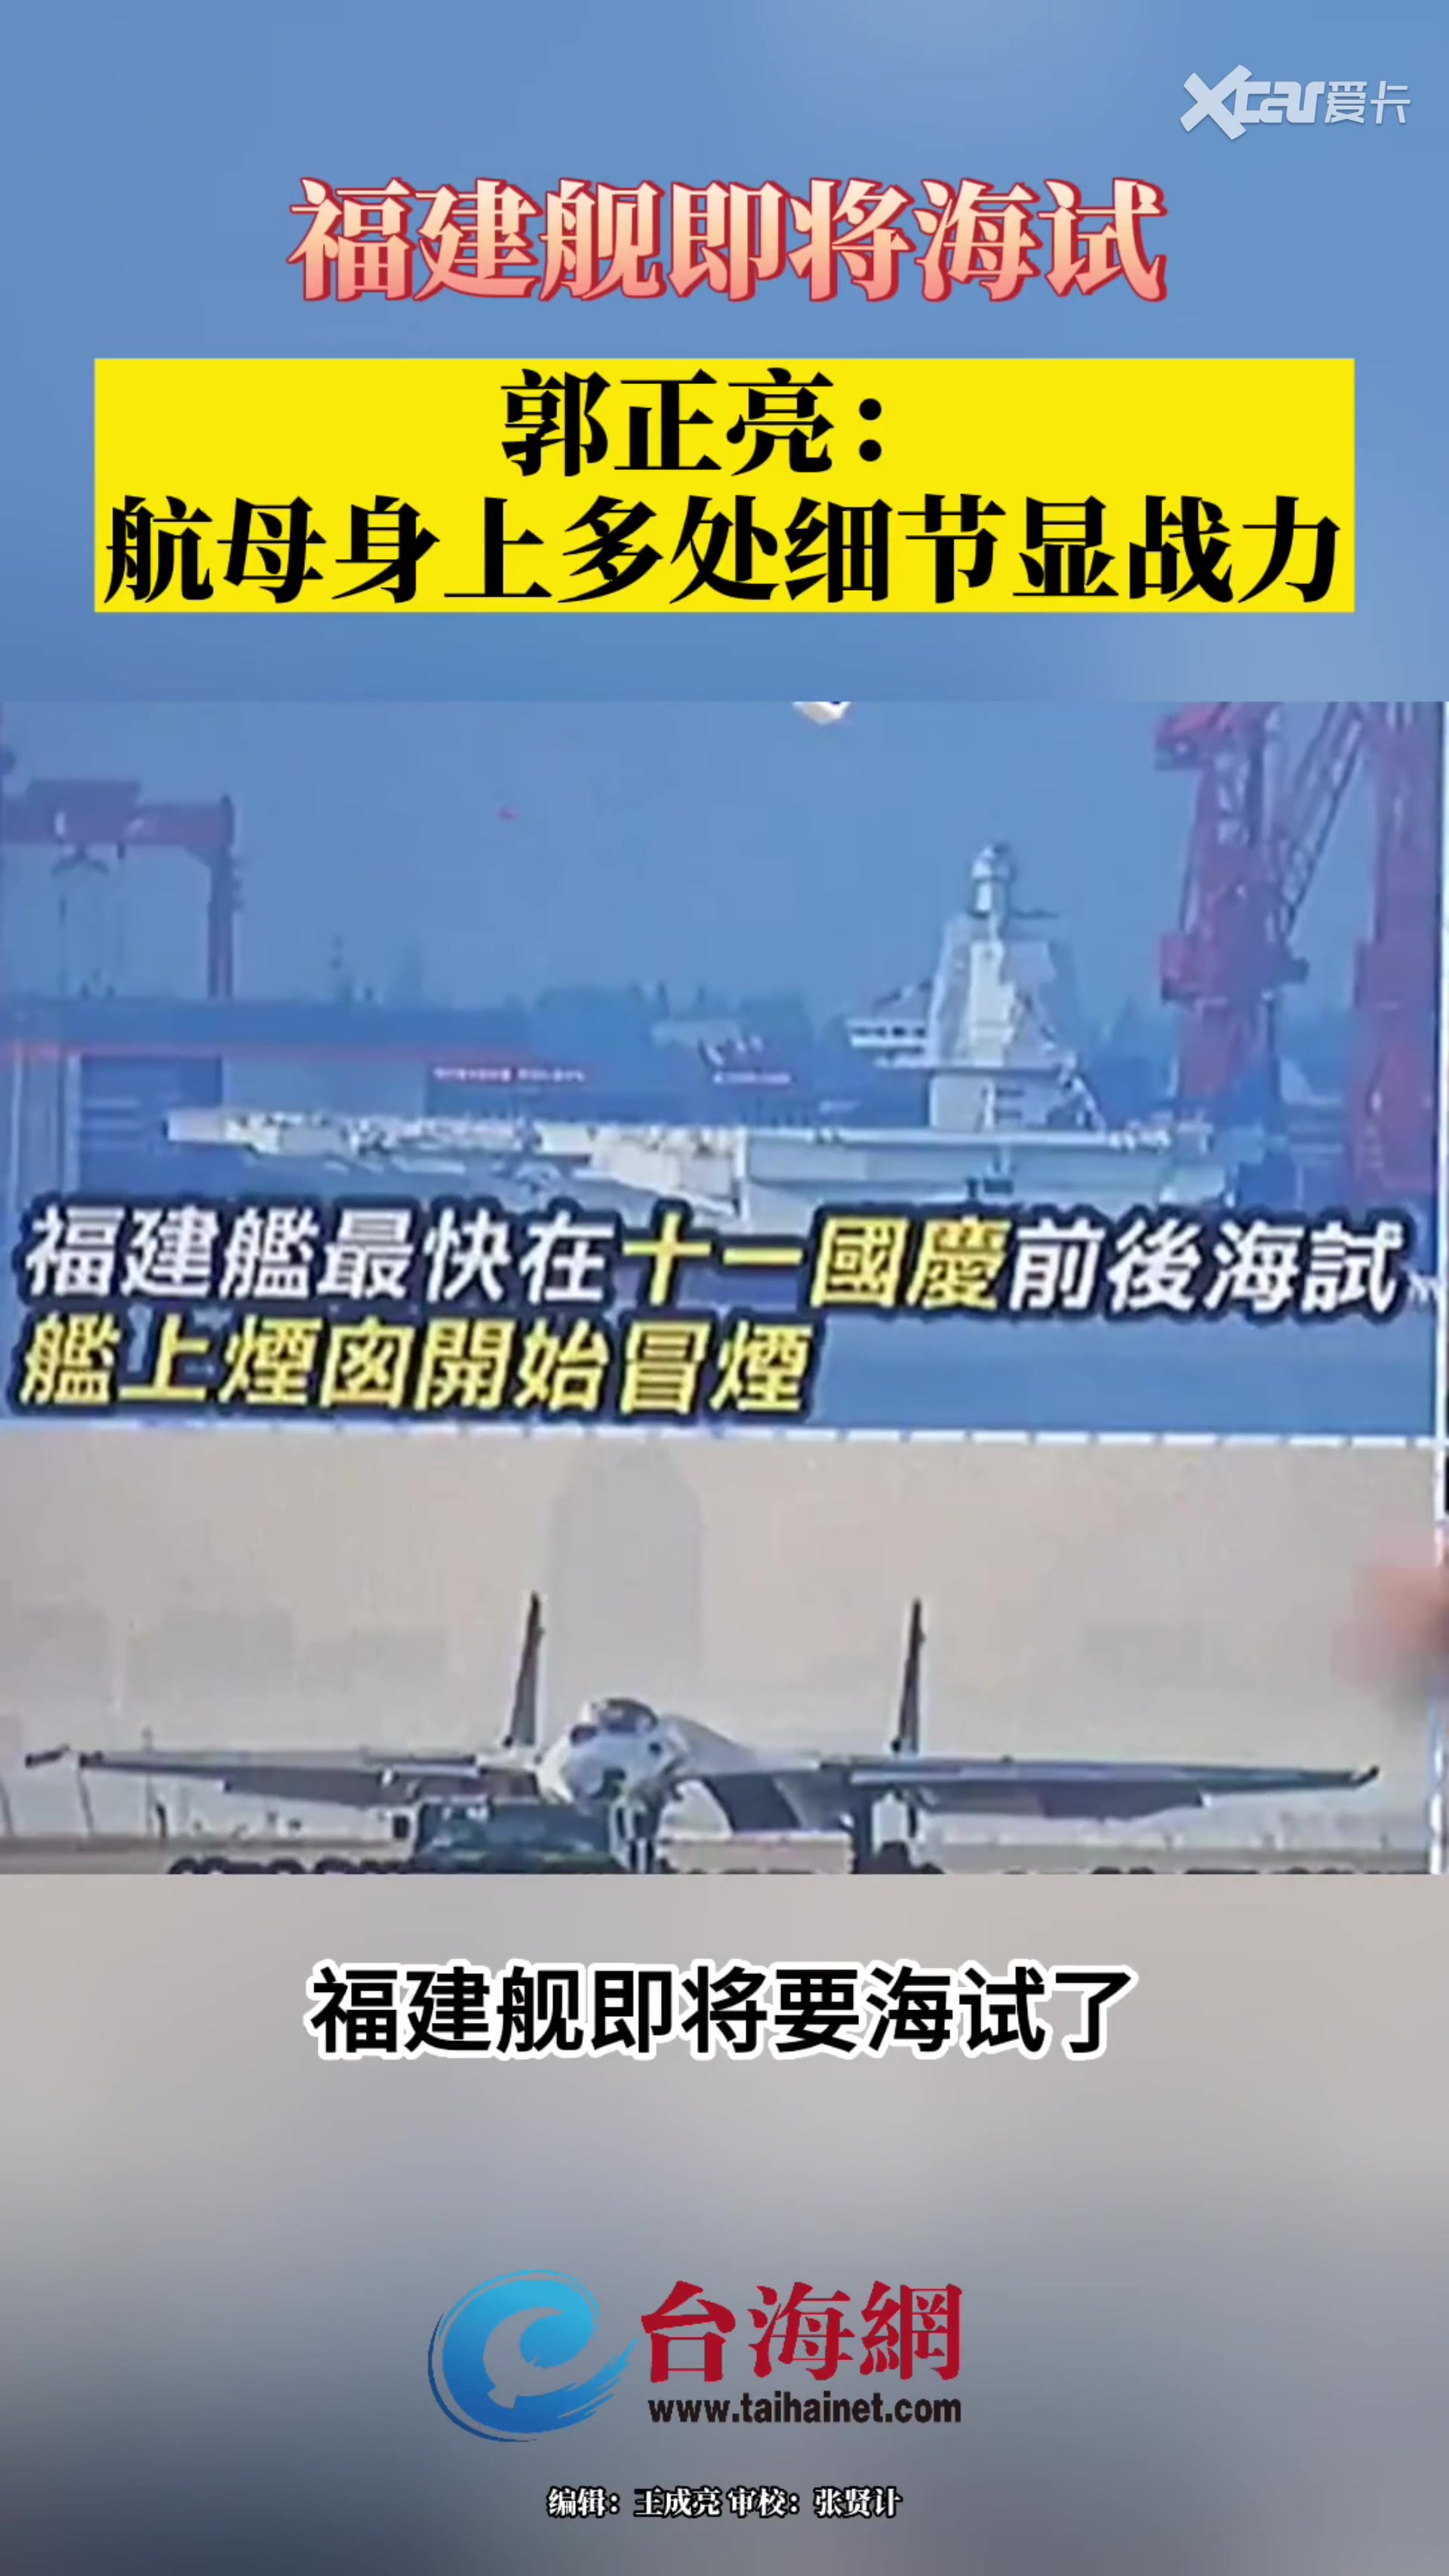 港媒:国产航母完成跨年海试 未见舰载机起降痕迹